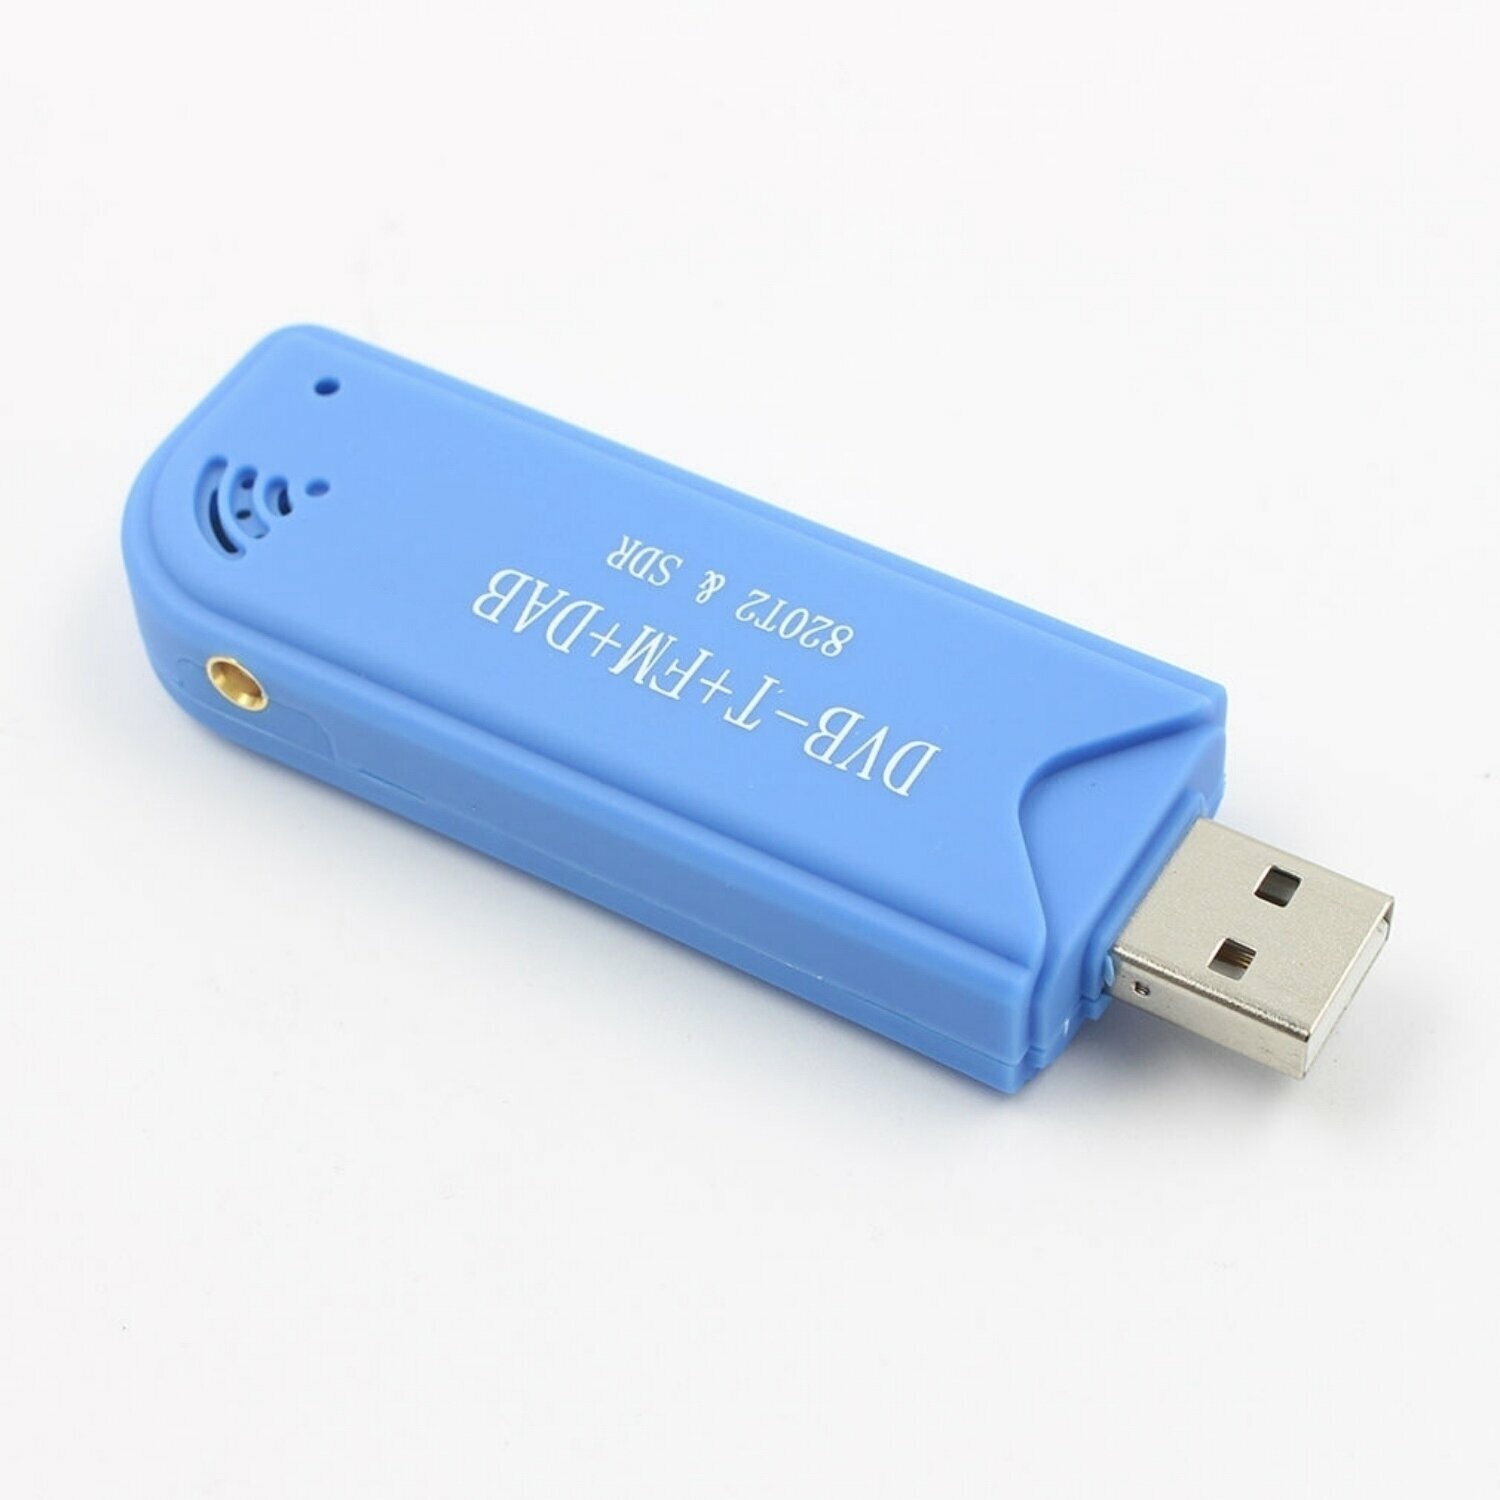 USB радиоприемник RTL-SDR Широкополосный радиосканер для компьютера планшета телефона